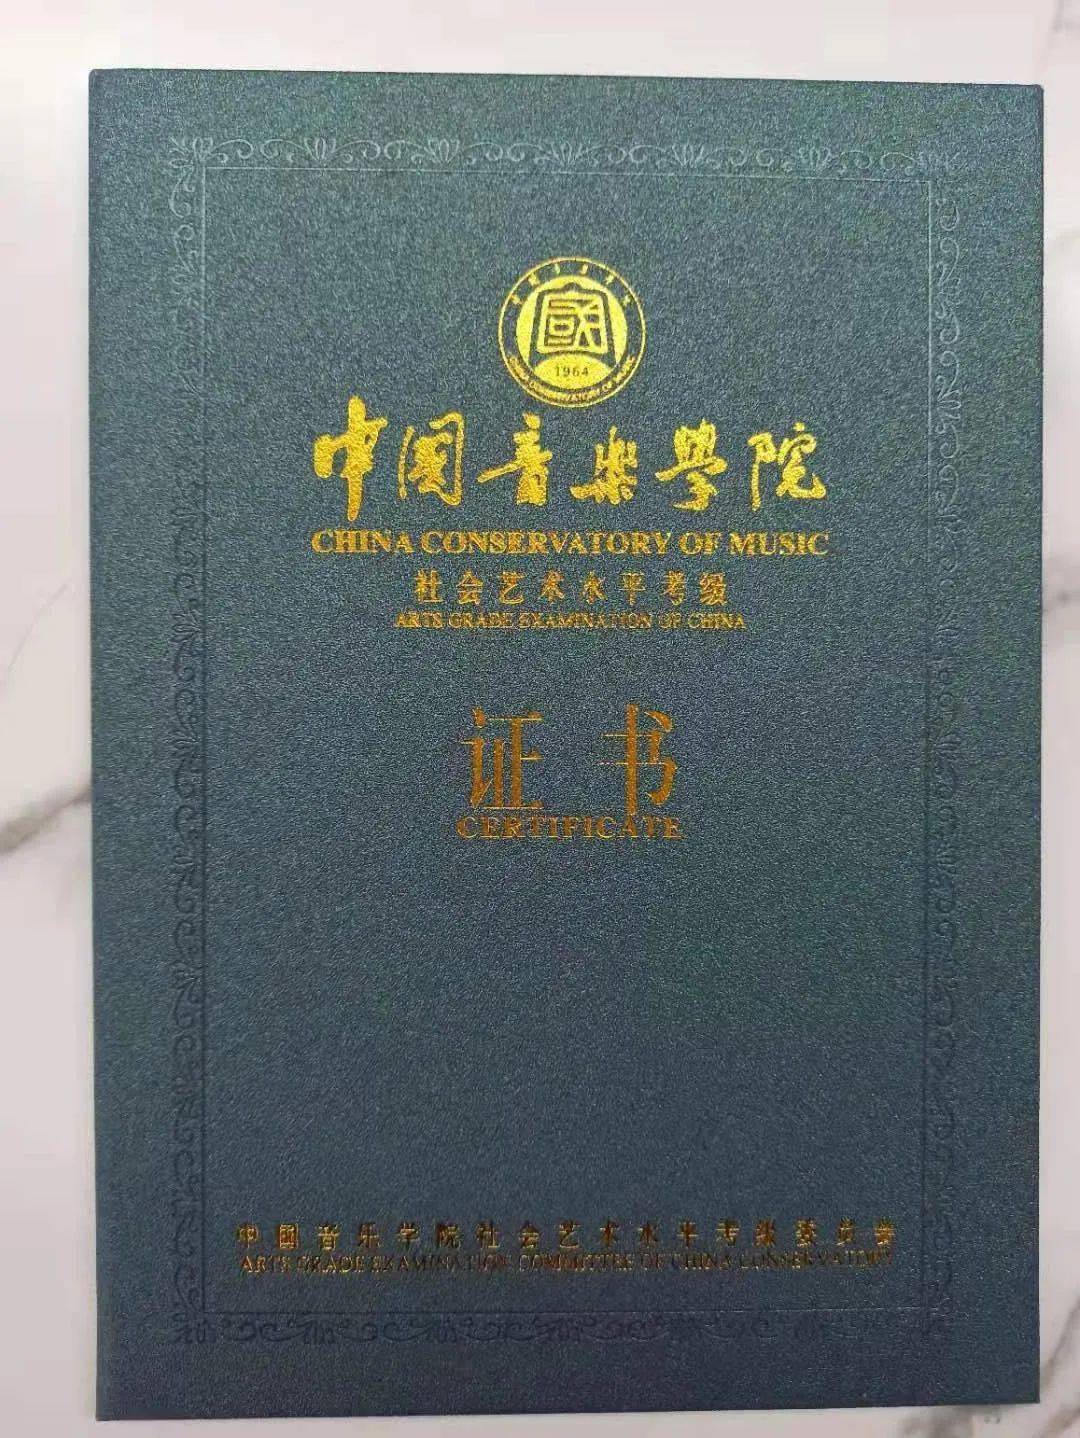 中国音乐学院地址图片